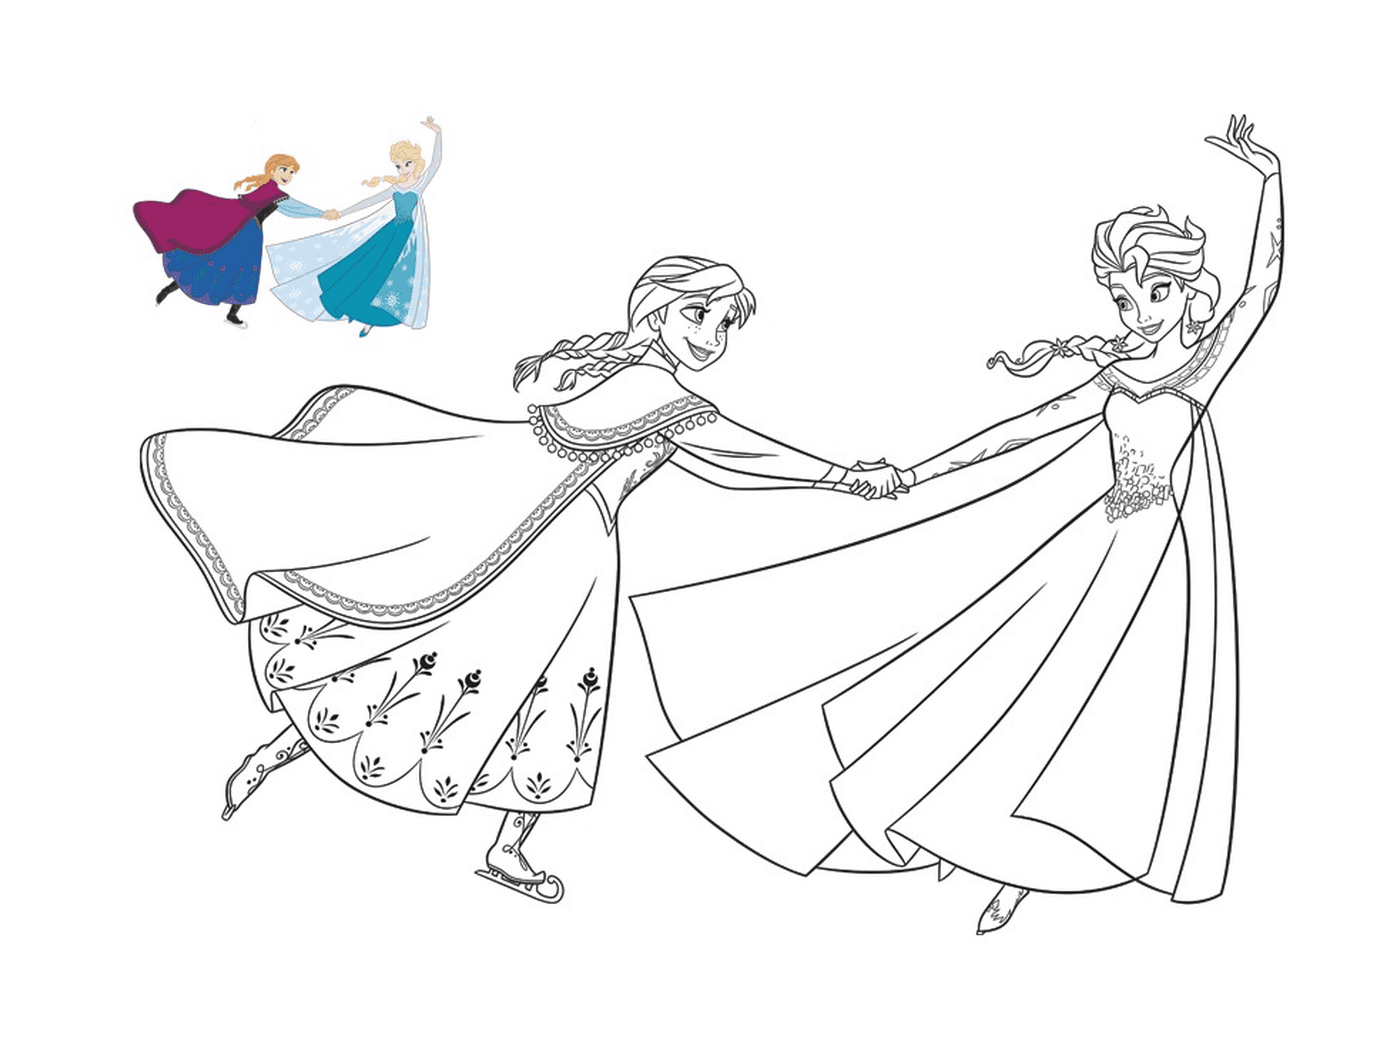   Elsa et Anna patinent joyeusement 